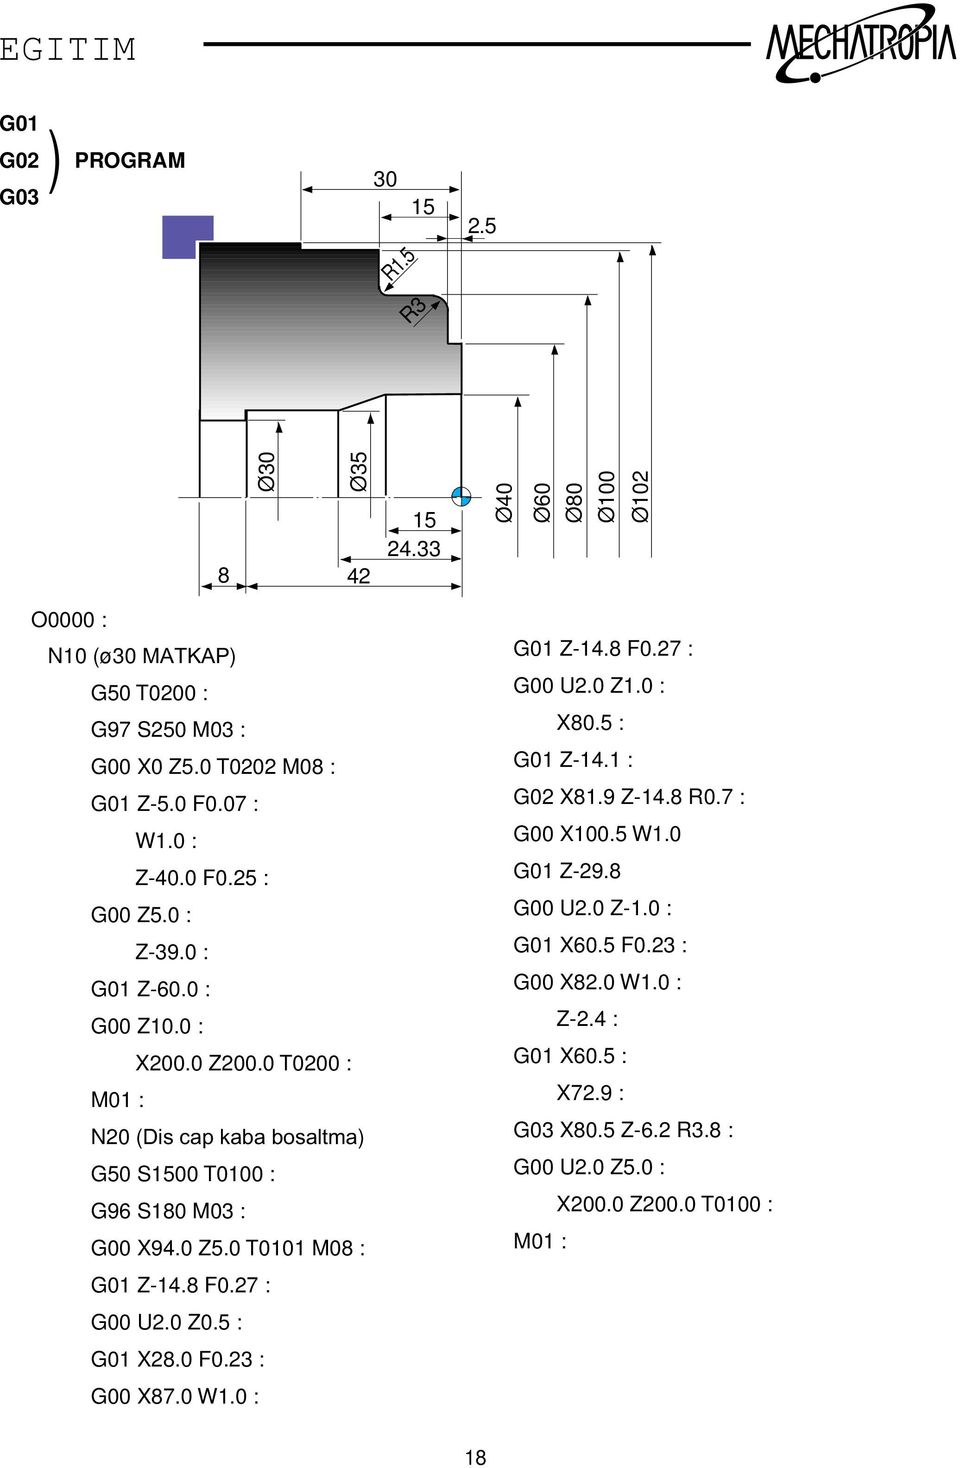 0 T0200 : M01 : N20 (Dis cap kaba bosaltma) G50 S1500 T0100 : G96 S180 M03 : G00 X94.0 5.0 T0101 M08 : G01-14.8 F0.27 : G00 U2.0 0.5 : G01 X28.0 F0.23 : G00 X87.0 W1.